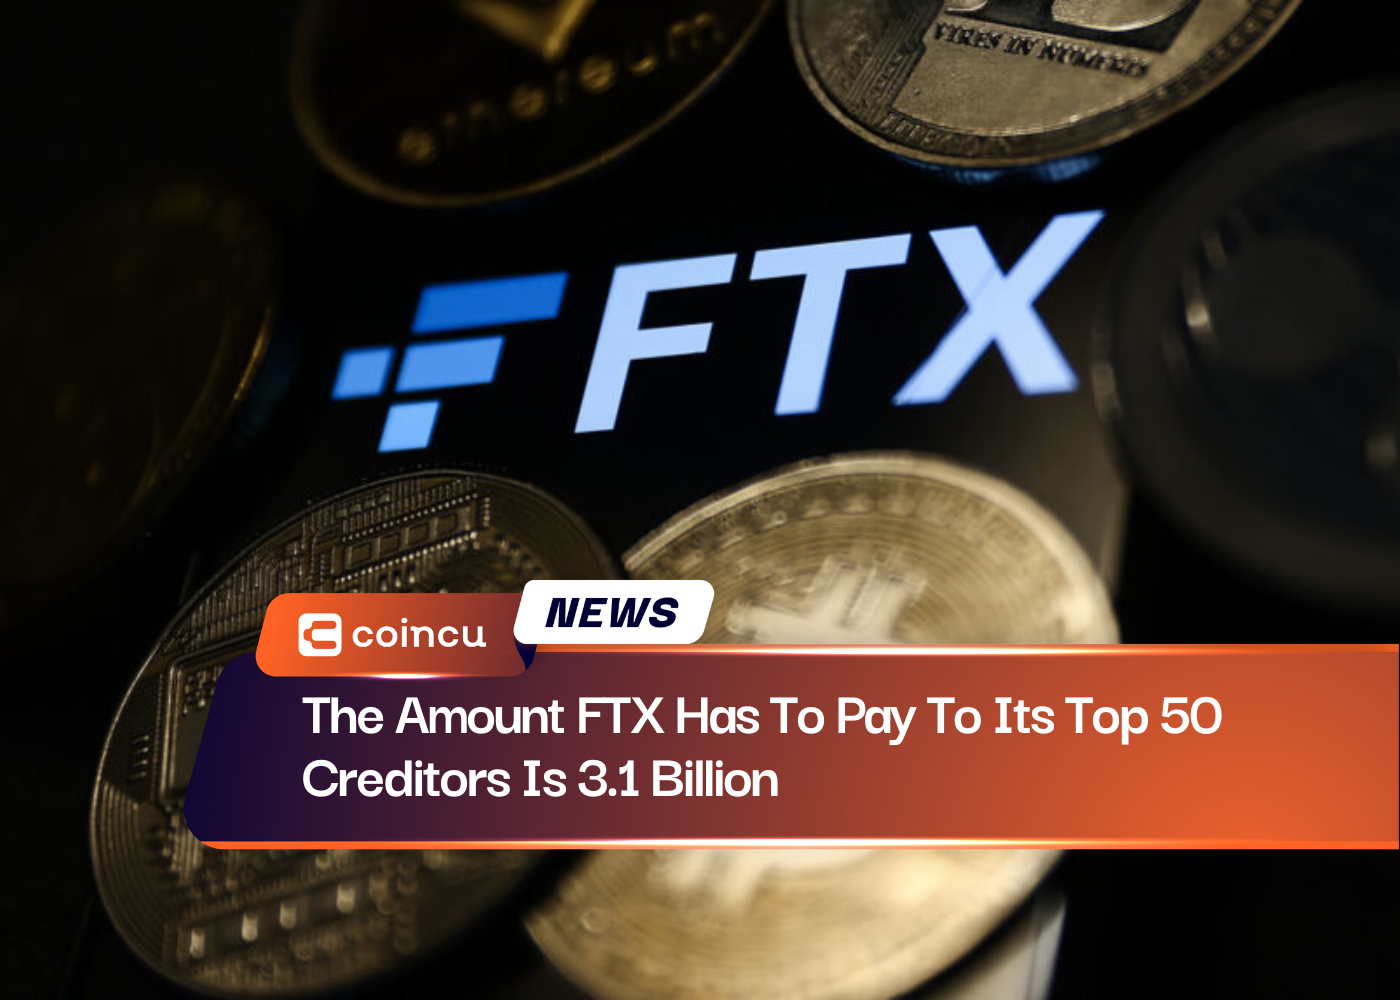 FTX가 상위 50대 채권자에게 지불해야 하는 금액은 3.1억 달러입니다.